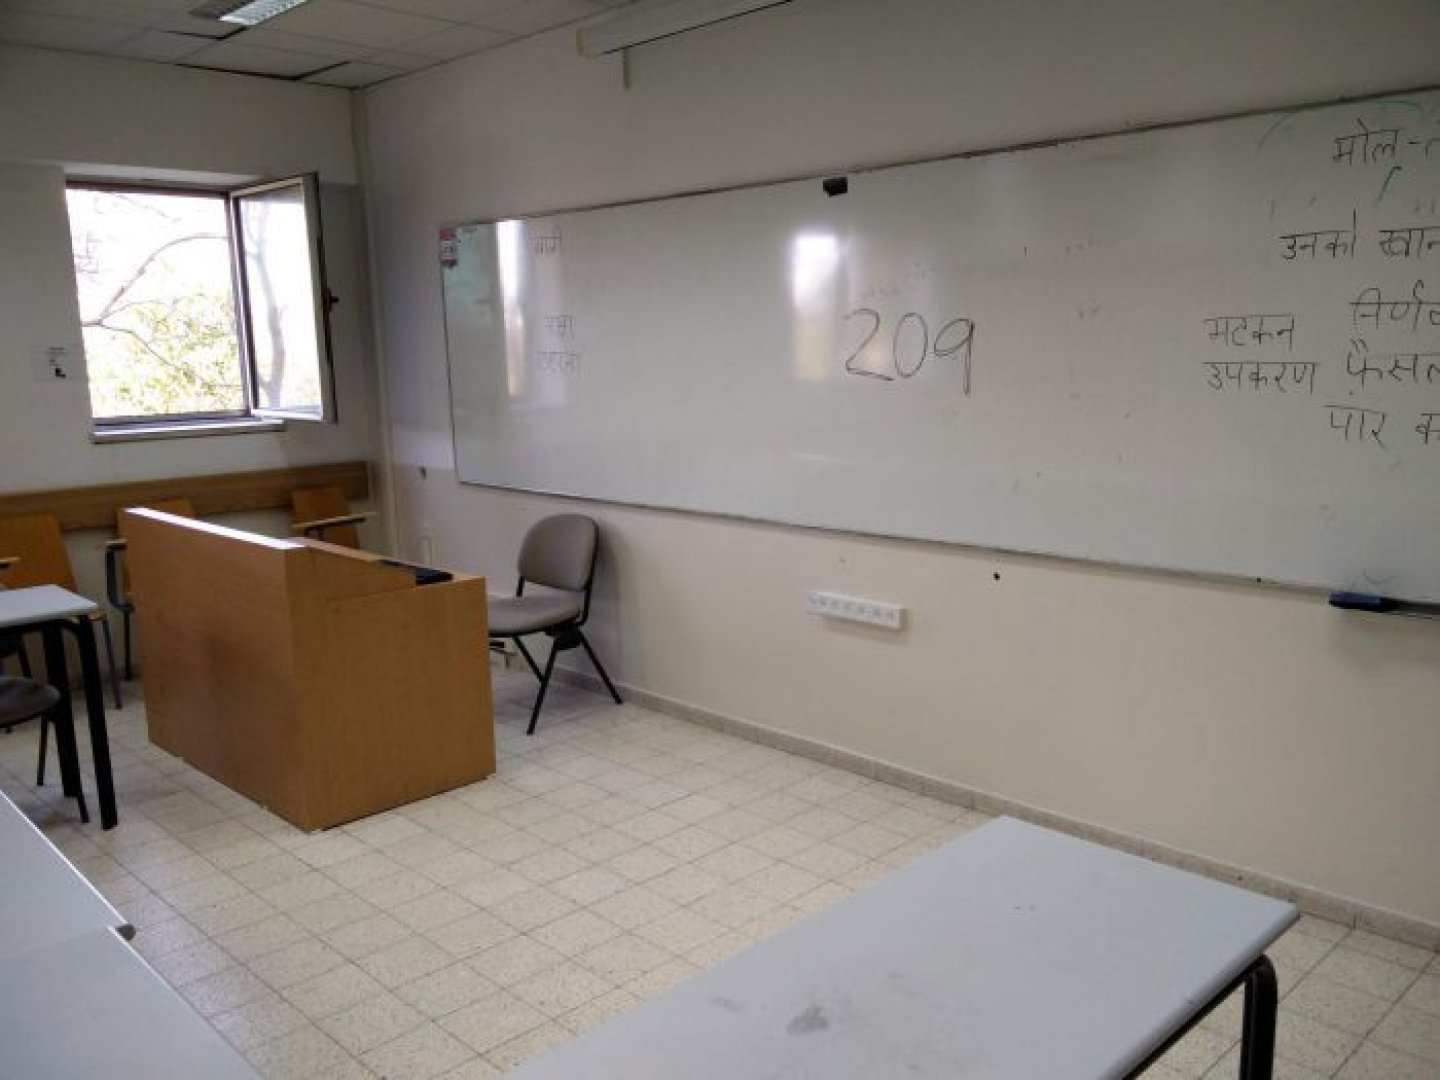 אוניברסיטת תל-אביב - דן דוד - חדר 209 - תמונה 3